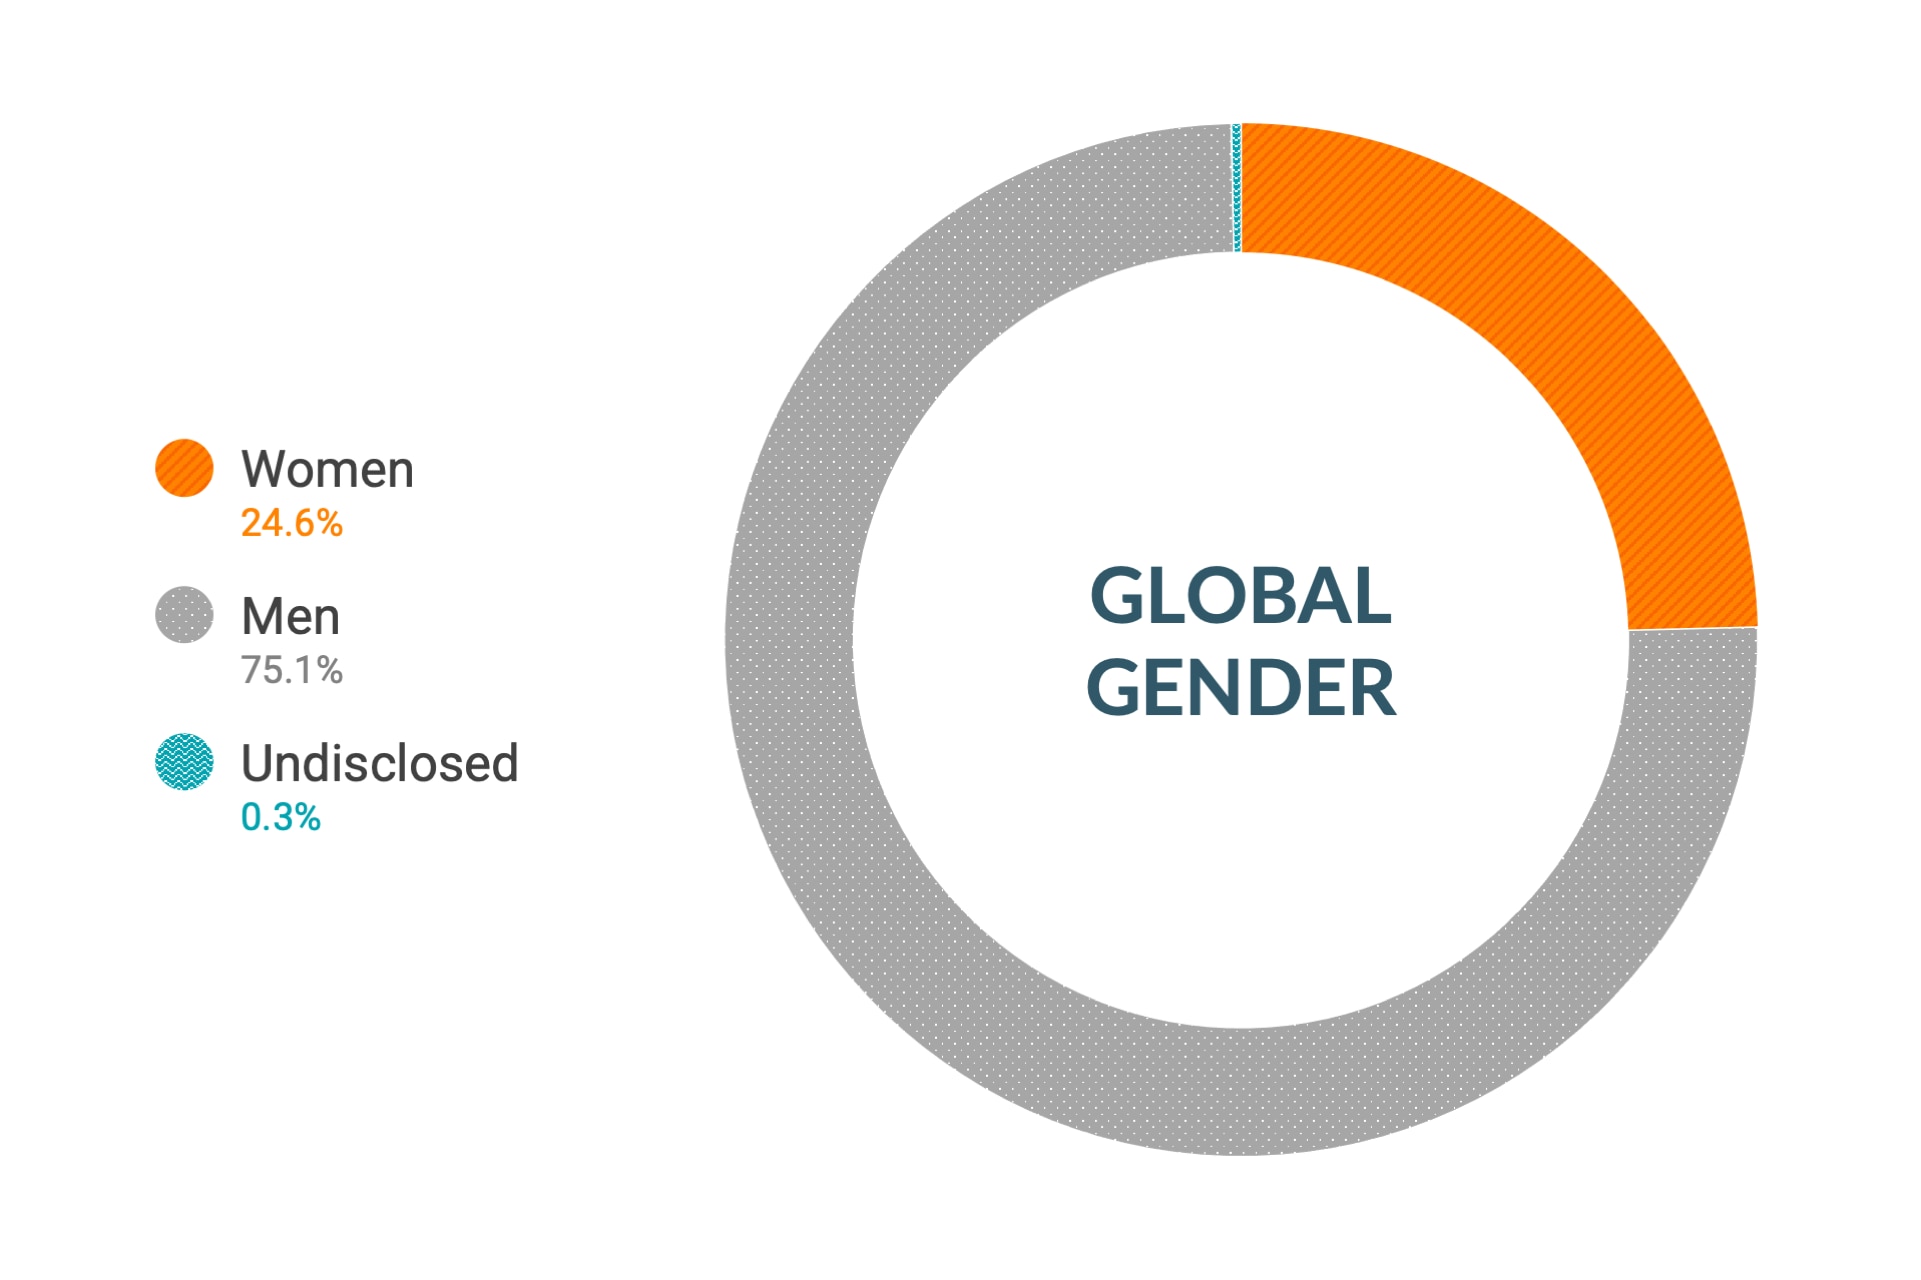 Dane firmy Cloudera dotyczące różnorodności i inkluzywności w kontekście płci w skali globalnej: kobiety 24,6%, mężczyźni 75,1%, nie ujawniono 0,3%